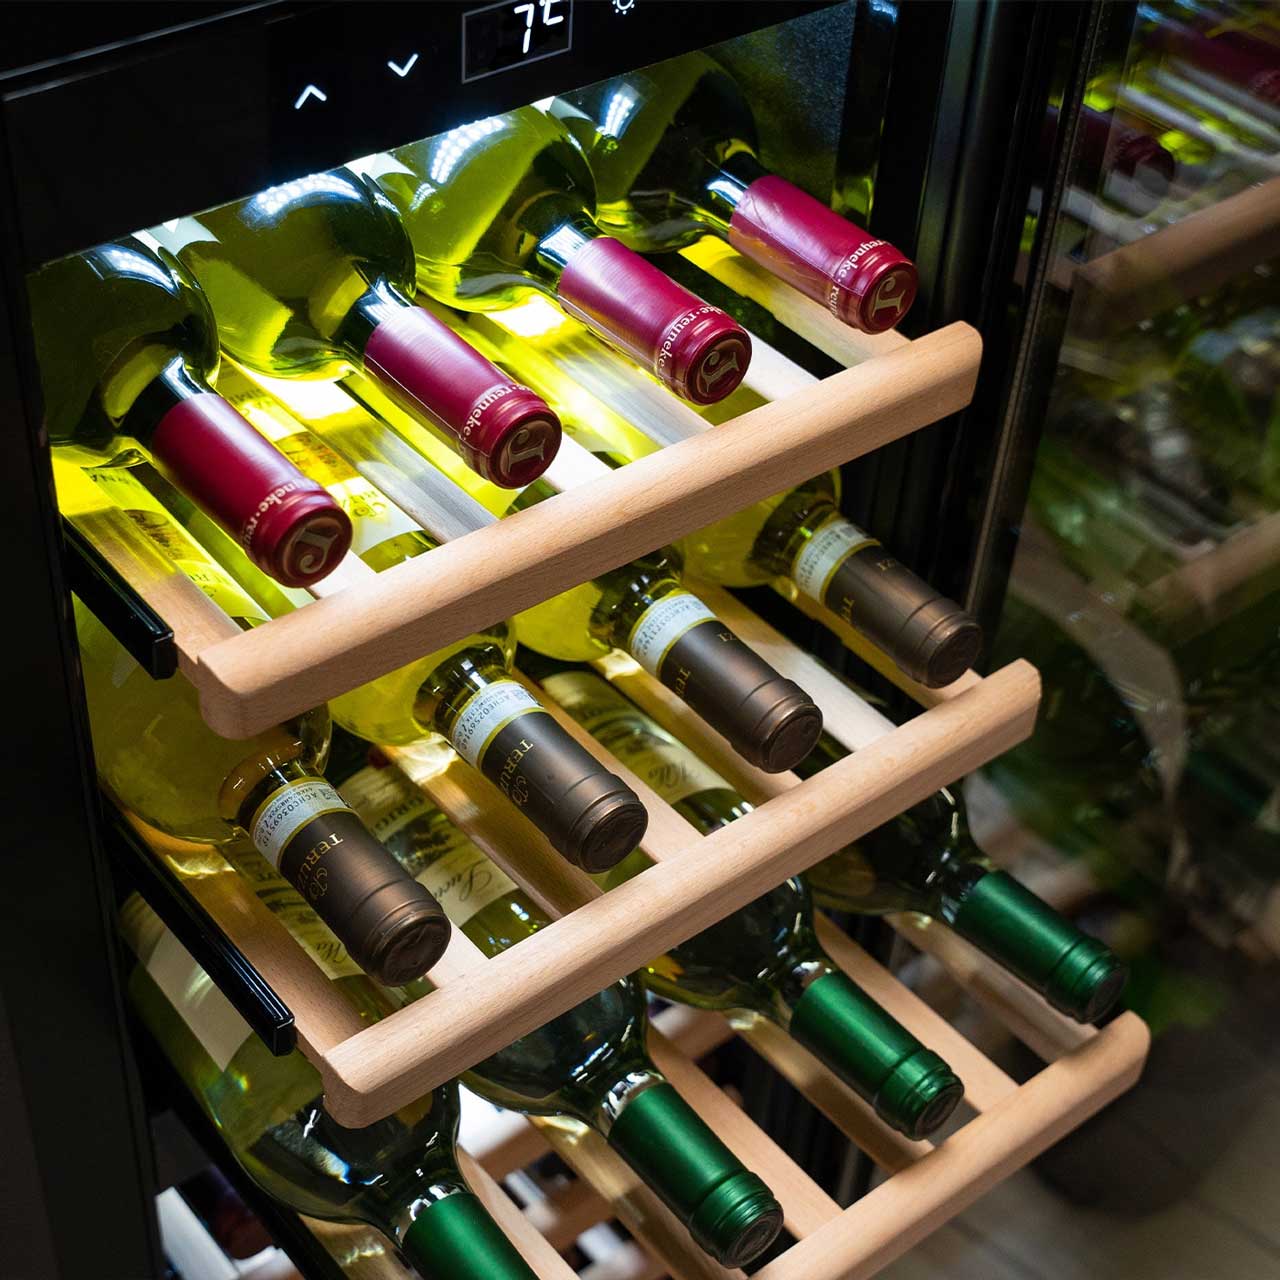 Caso WineExclusive 38 Smart Weinkühlschrank